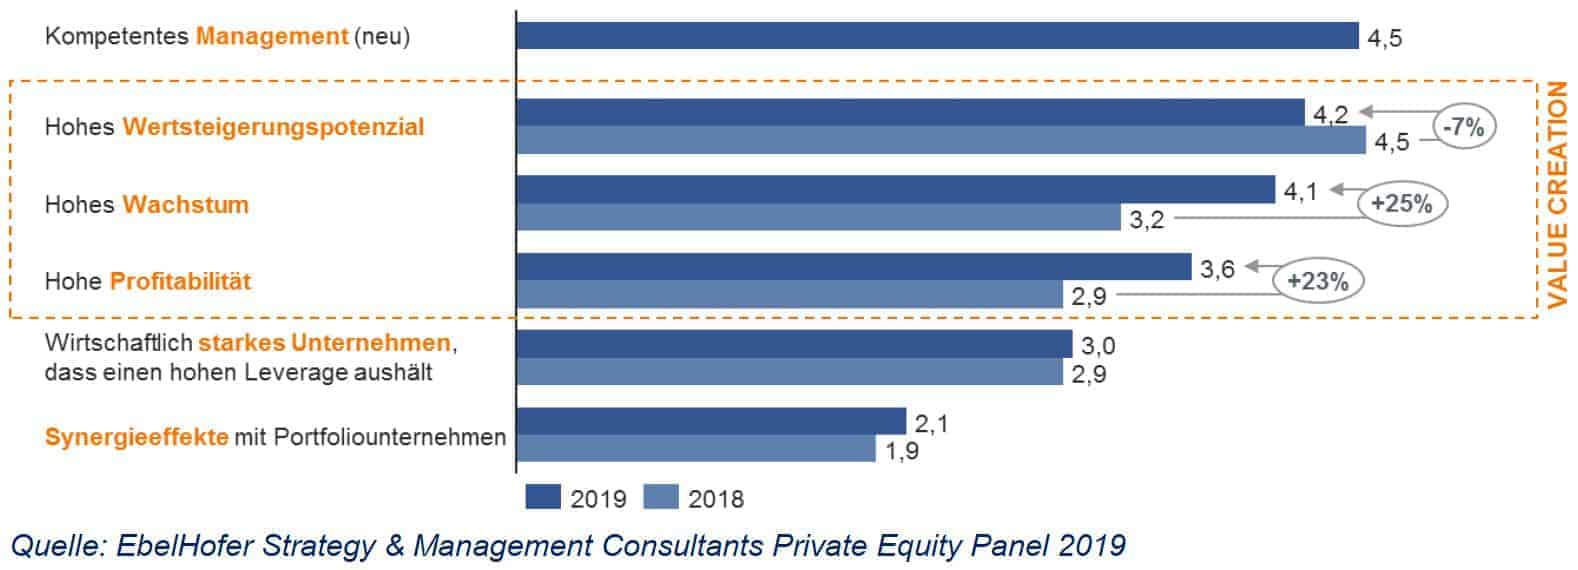 Private Equity: Wichtigkeit von Faktoren bei der Auswahl von Targets